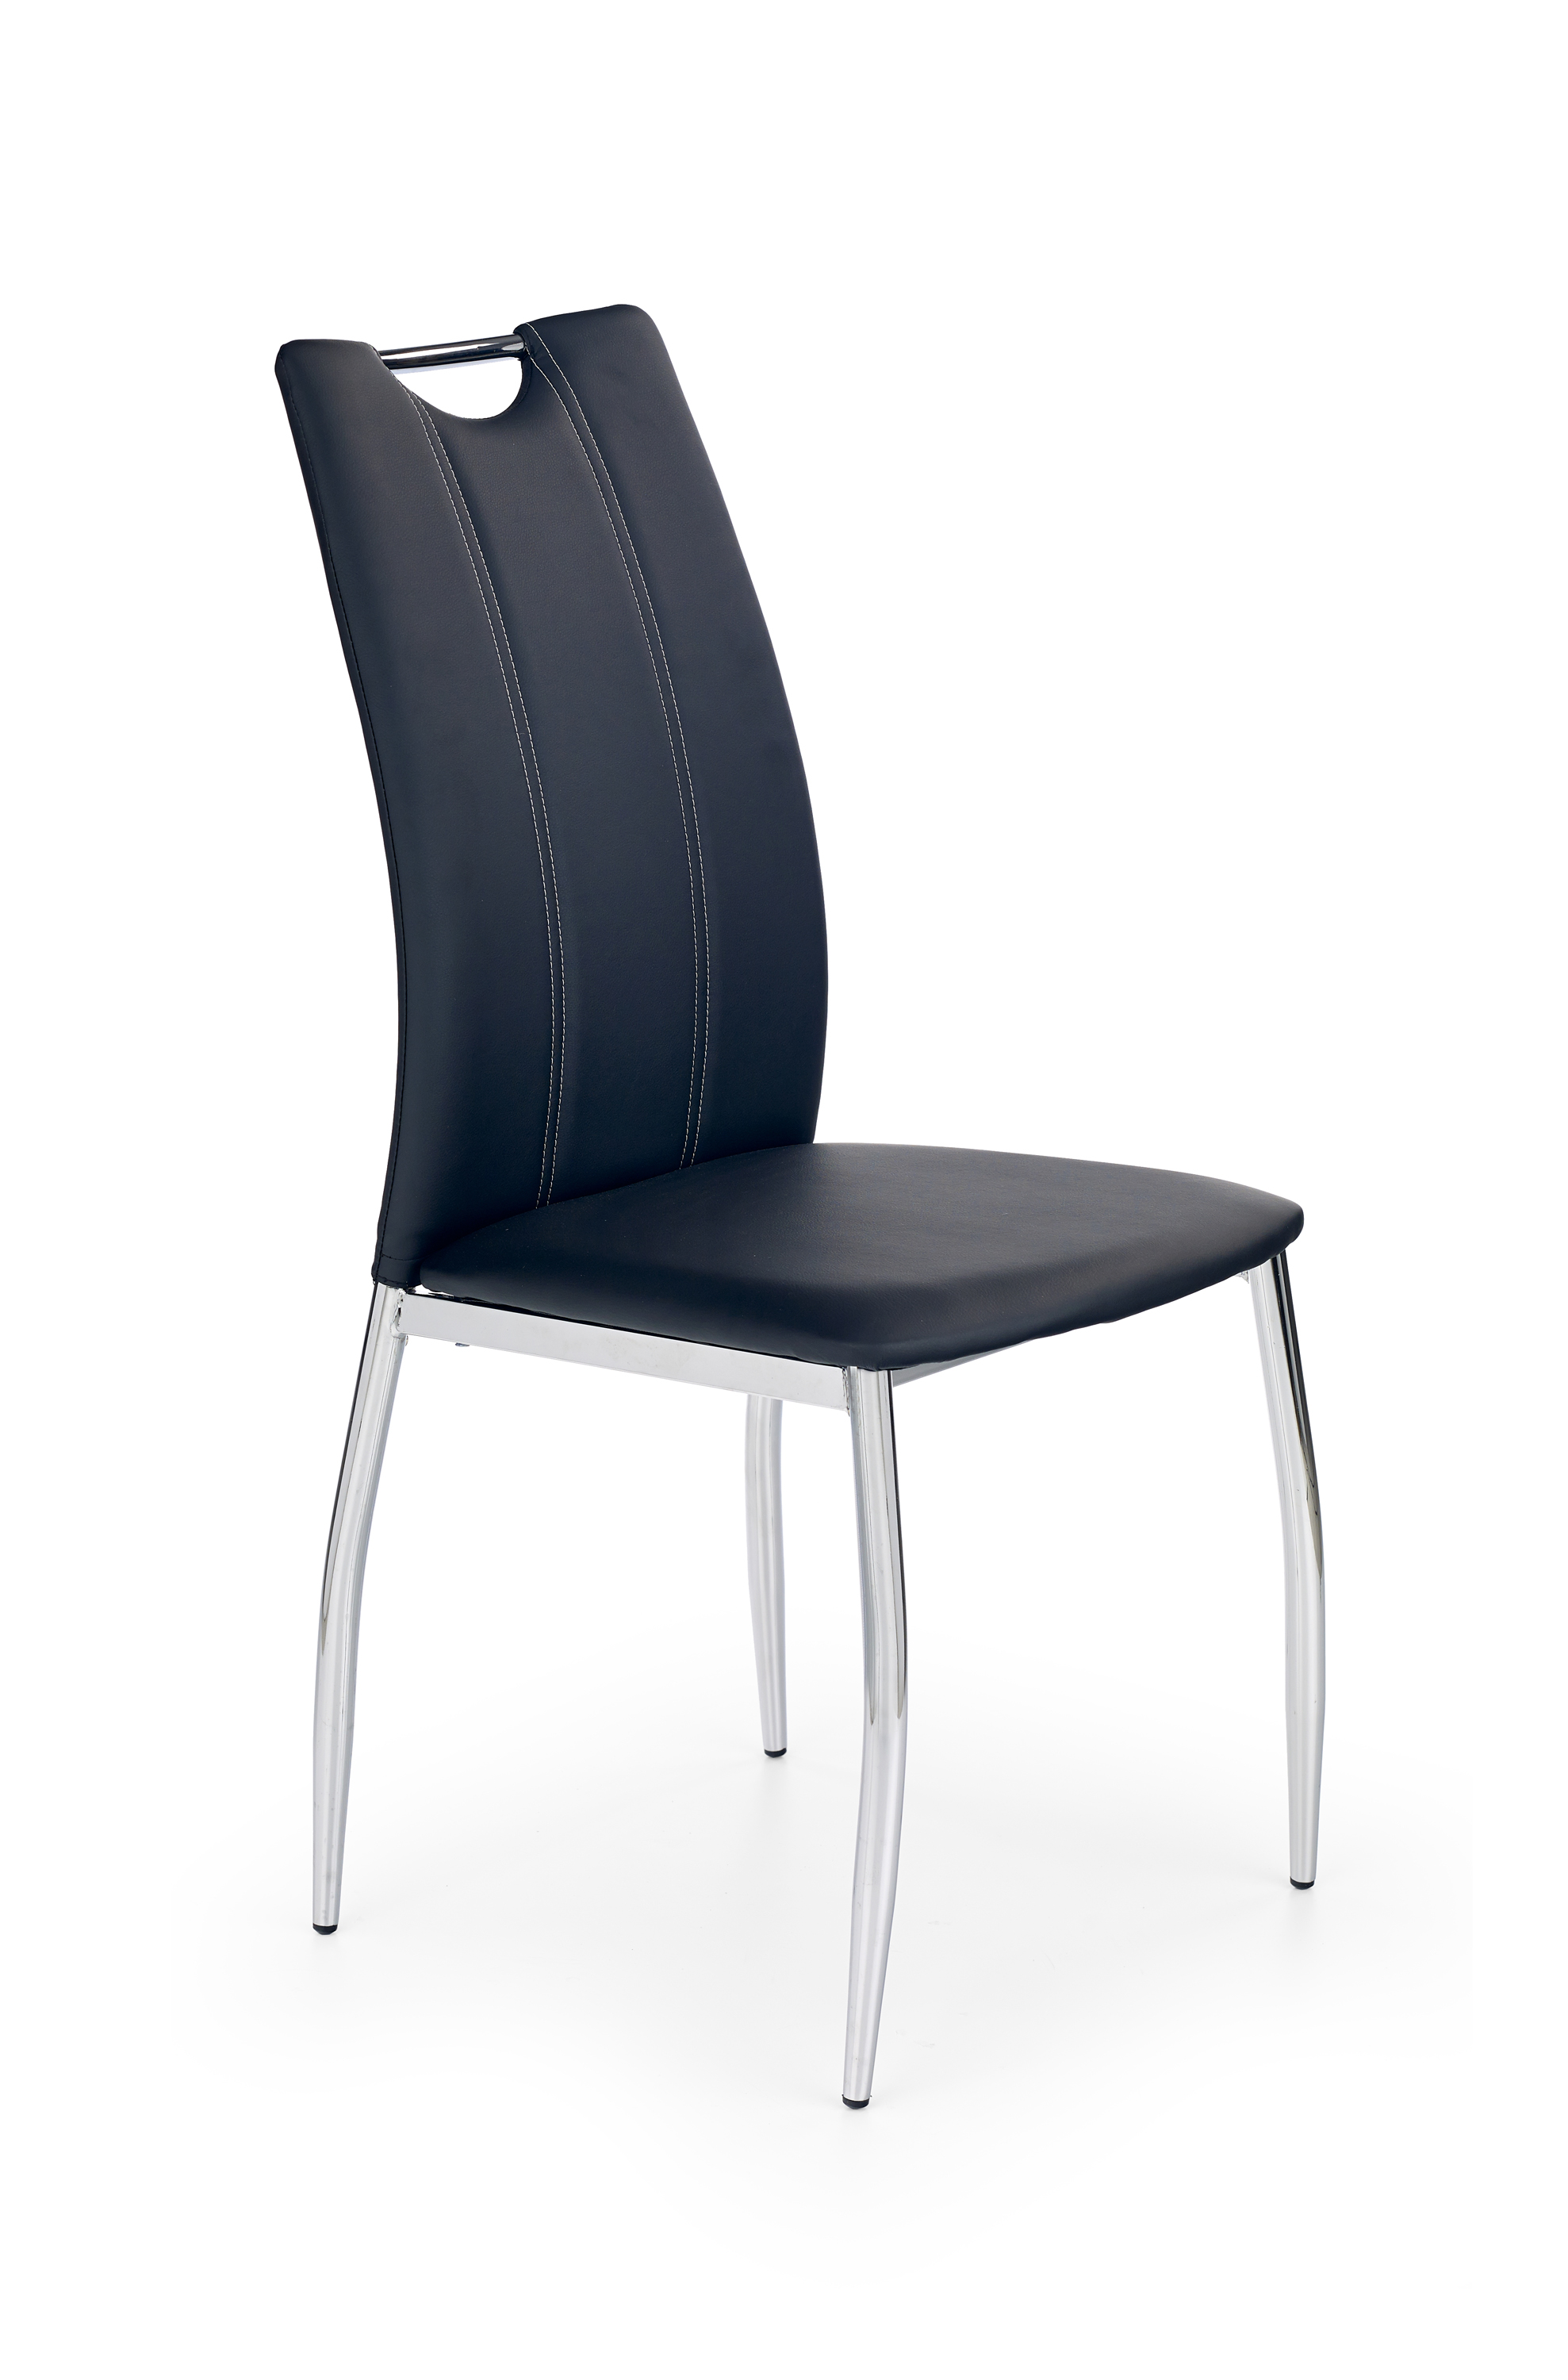 Židle K187 - černá Židle k187 - černé